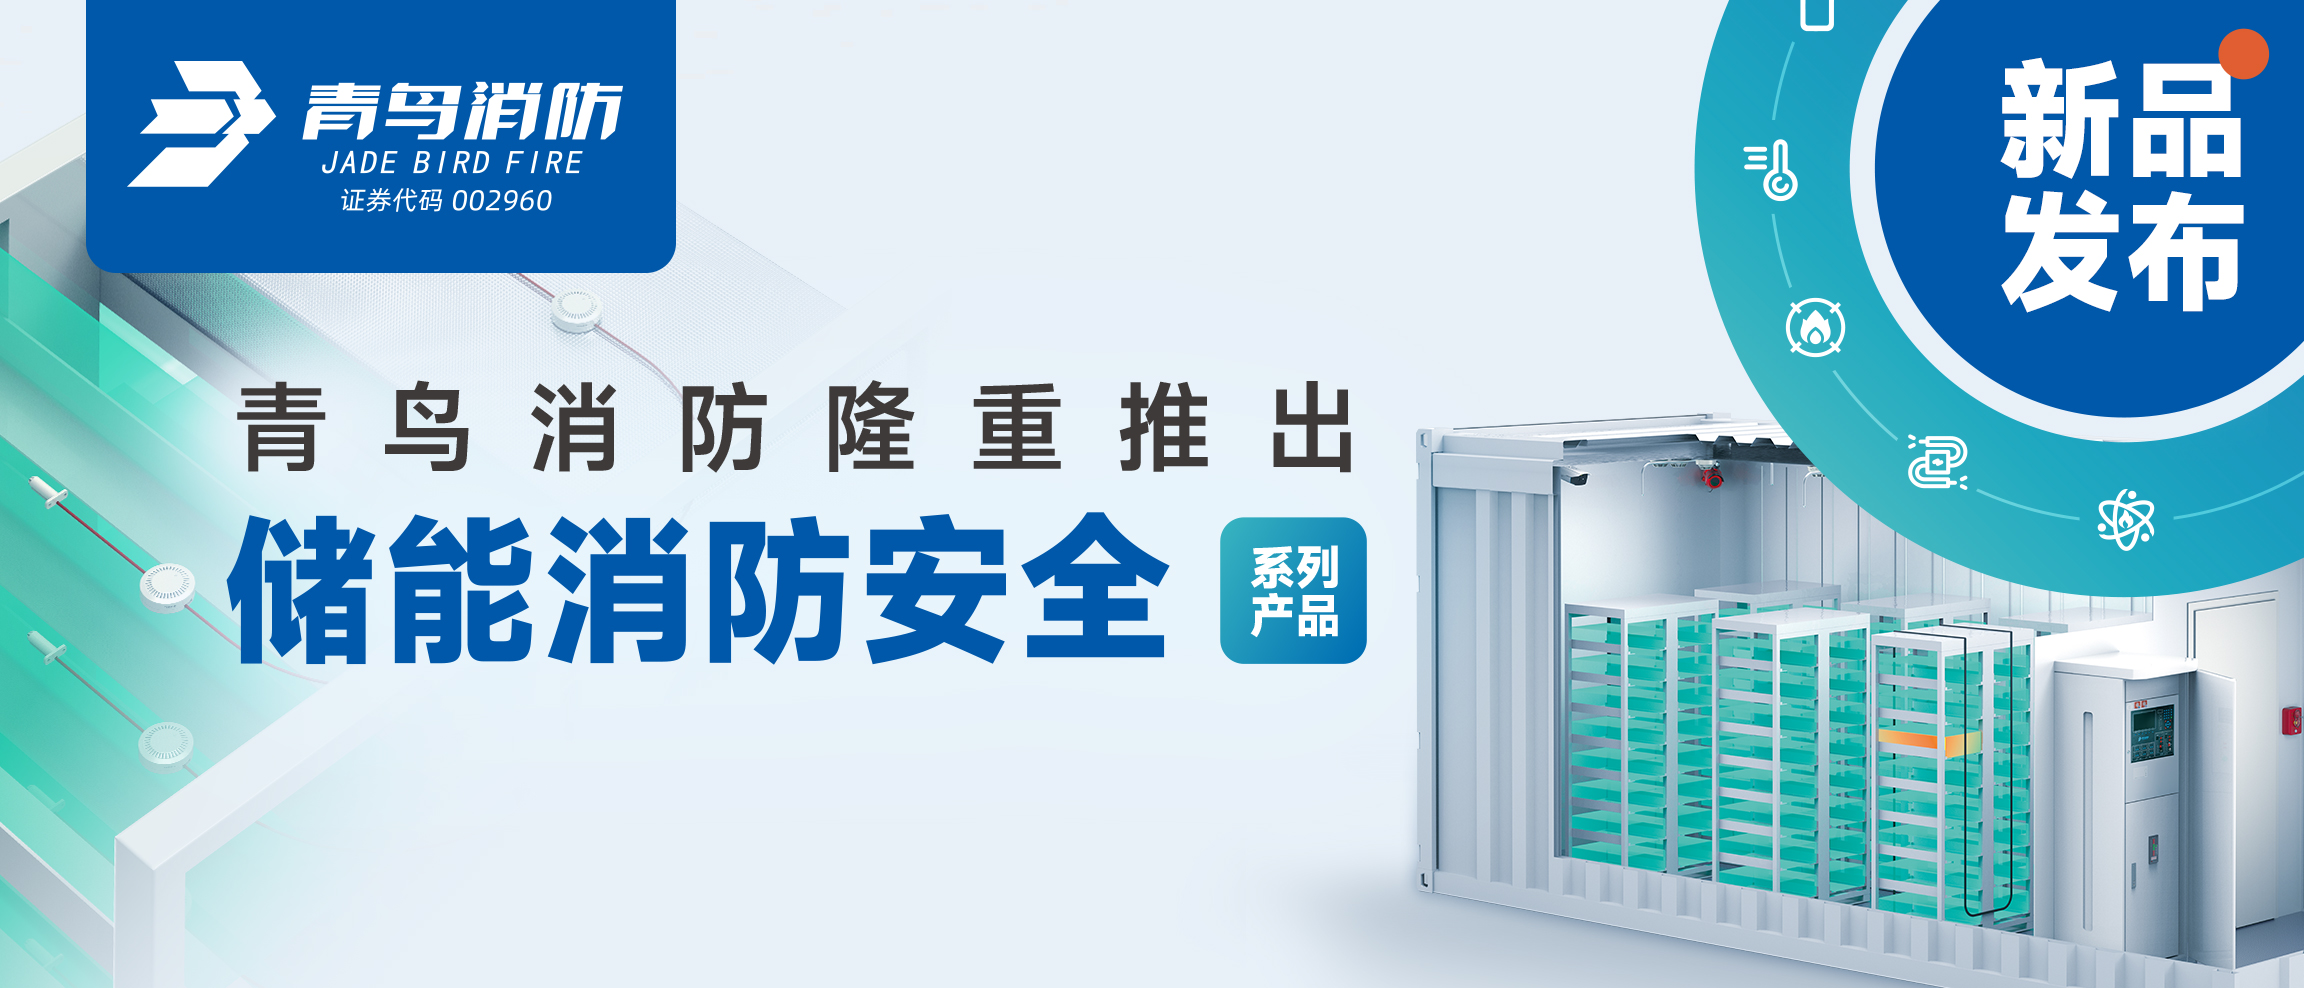 全新系统发布 | KOK体育（中国）官方网站在线下载
消防隆重推出储能消防安全系列产品